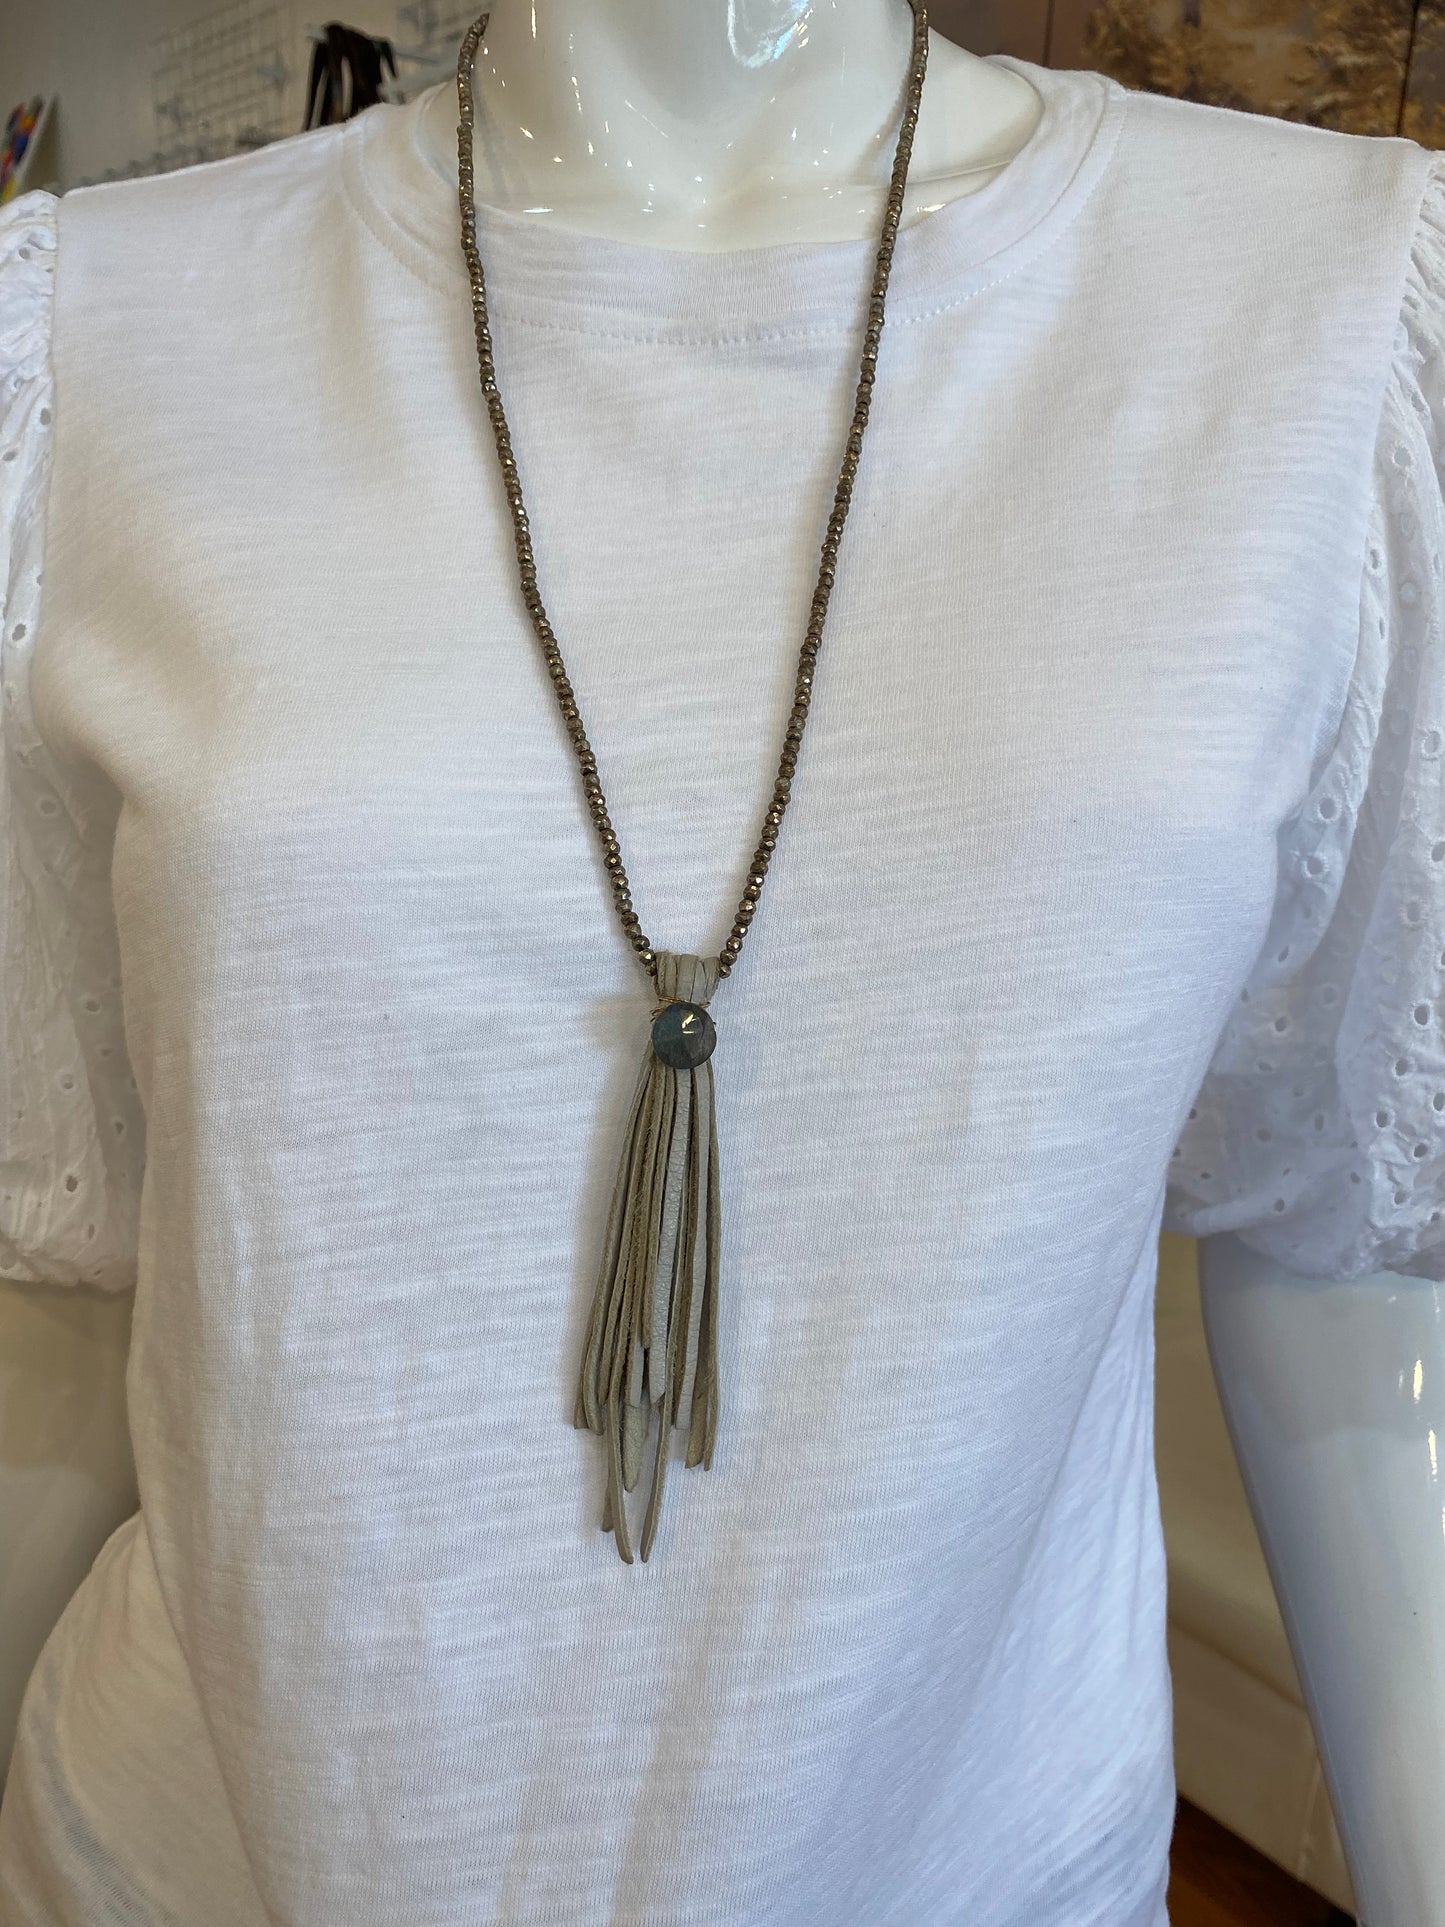 Tranquil Tassel Necklace - Light Grey